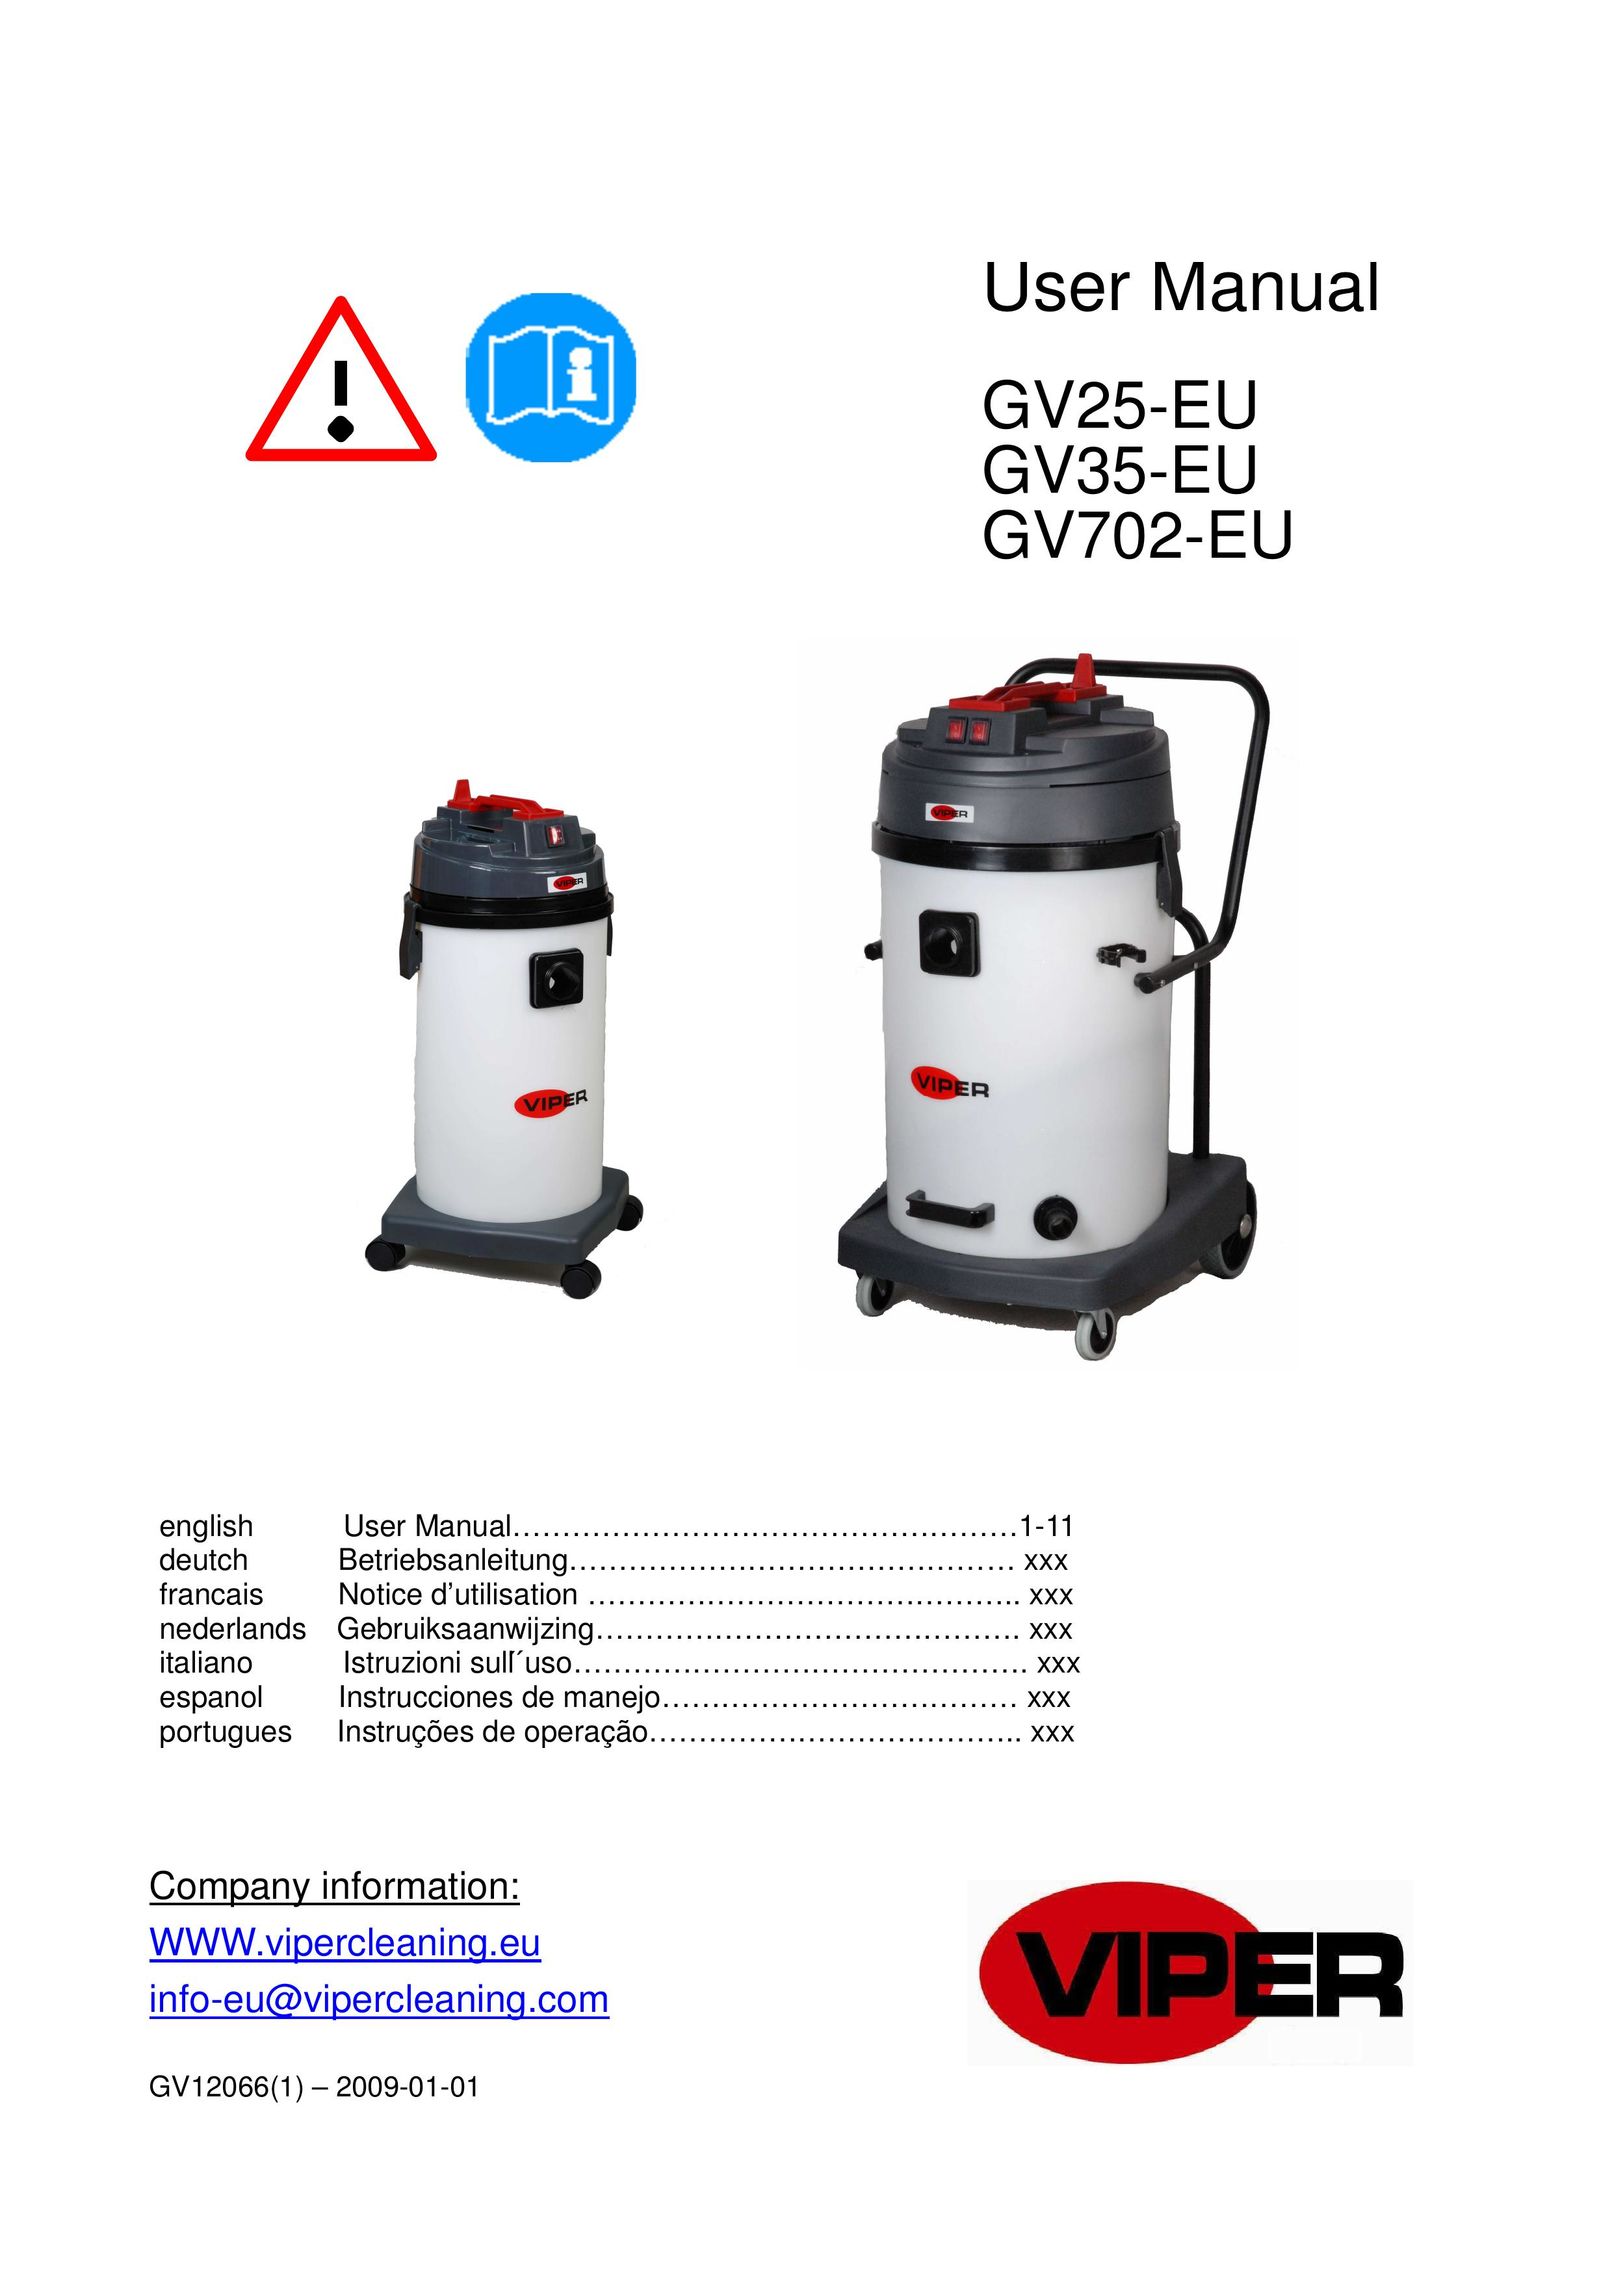 Viper GV35-EU Vacuum Cleaner User Manual